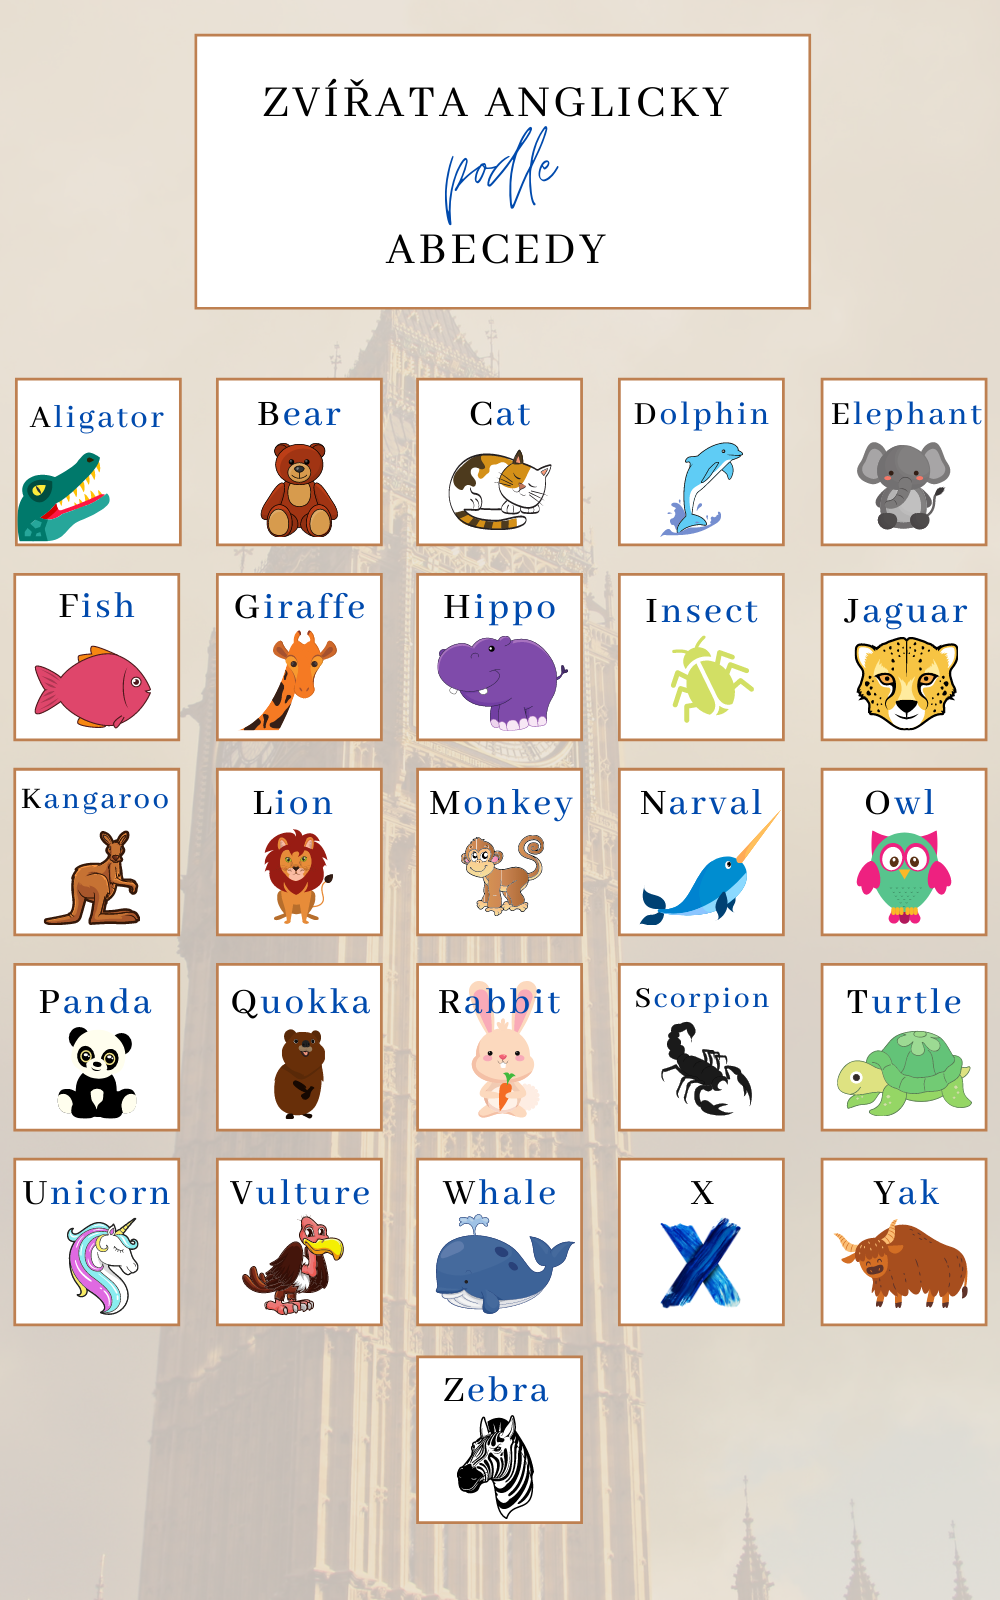 Zvířata anglicky podle abecedy